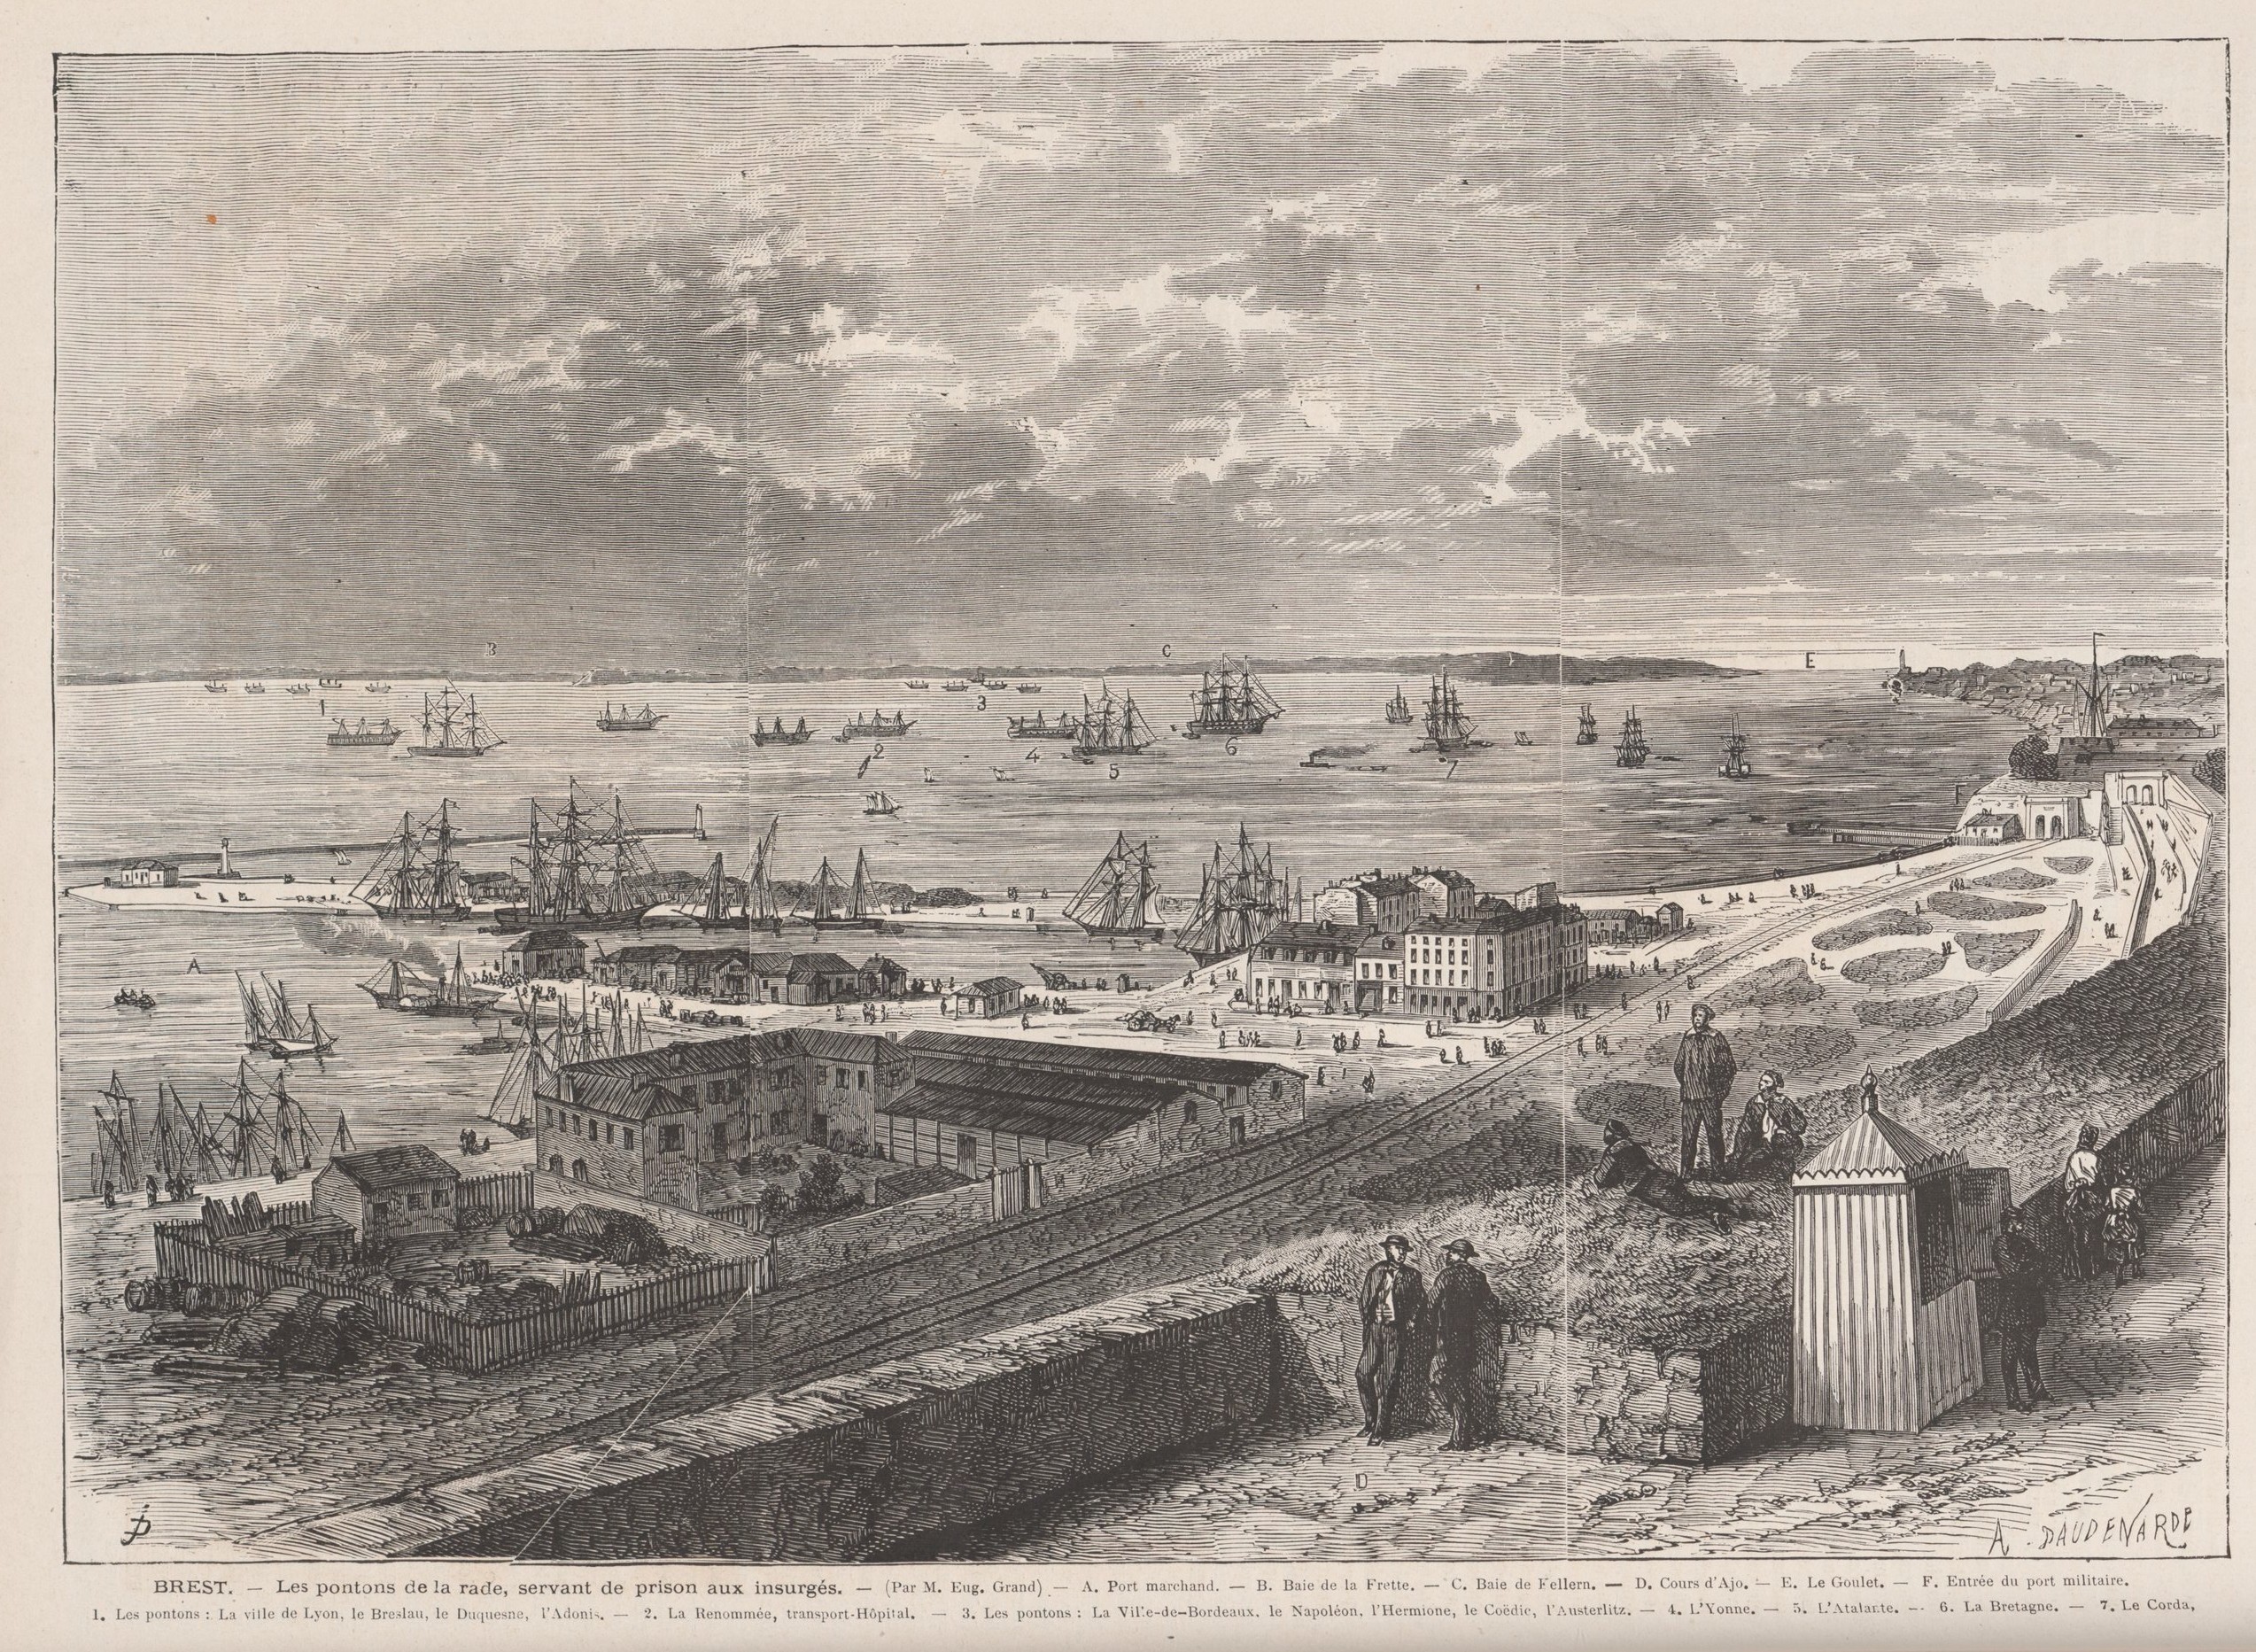 Brest les pontons de la rade servant de prison aux insurgés de la Commune. Dessin de Grand 15 juillet 1871